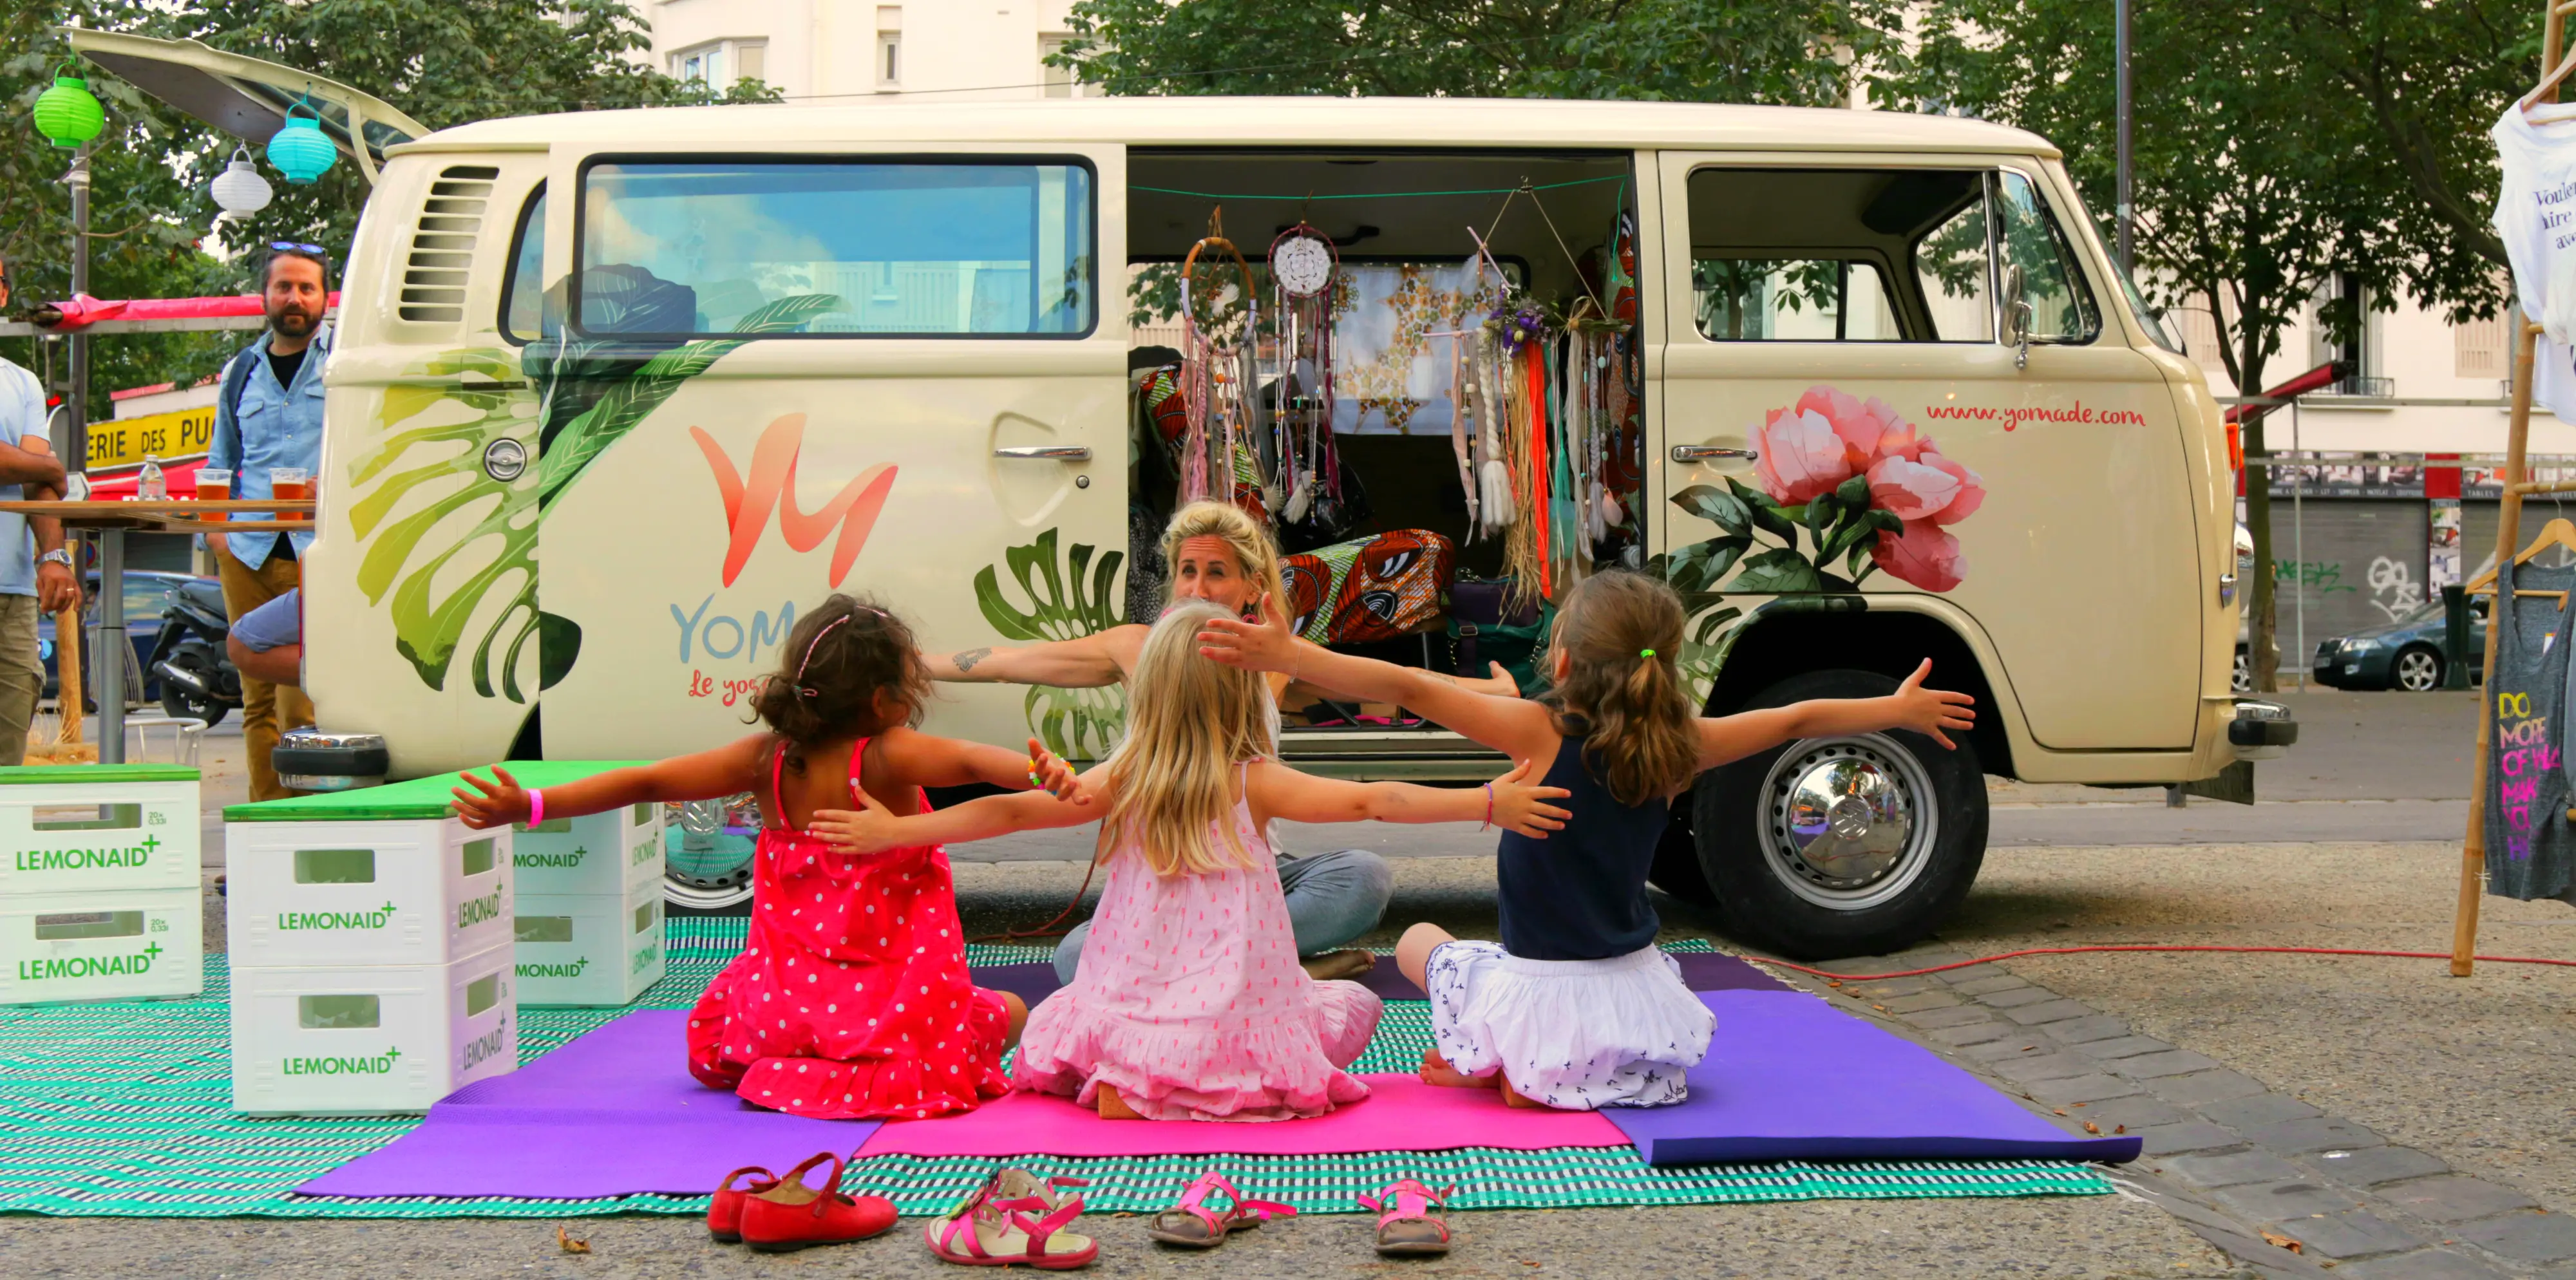 Yomade, le Yoga Nomade en van hippie qui se déplace chez vous à Paris